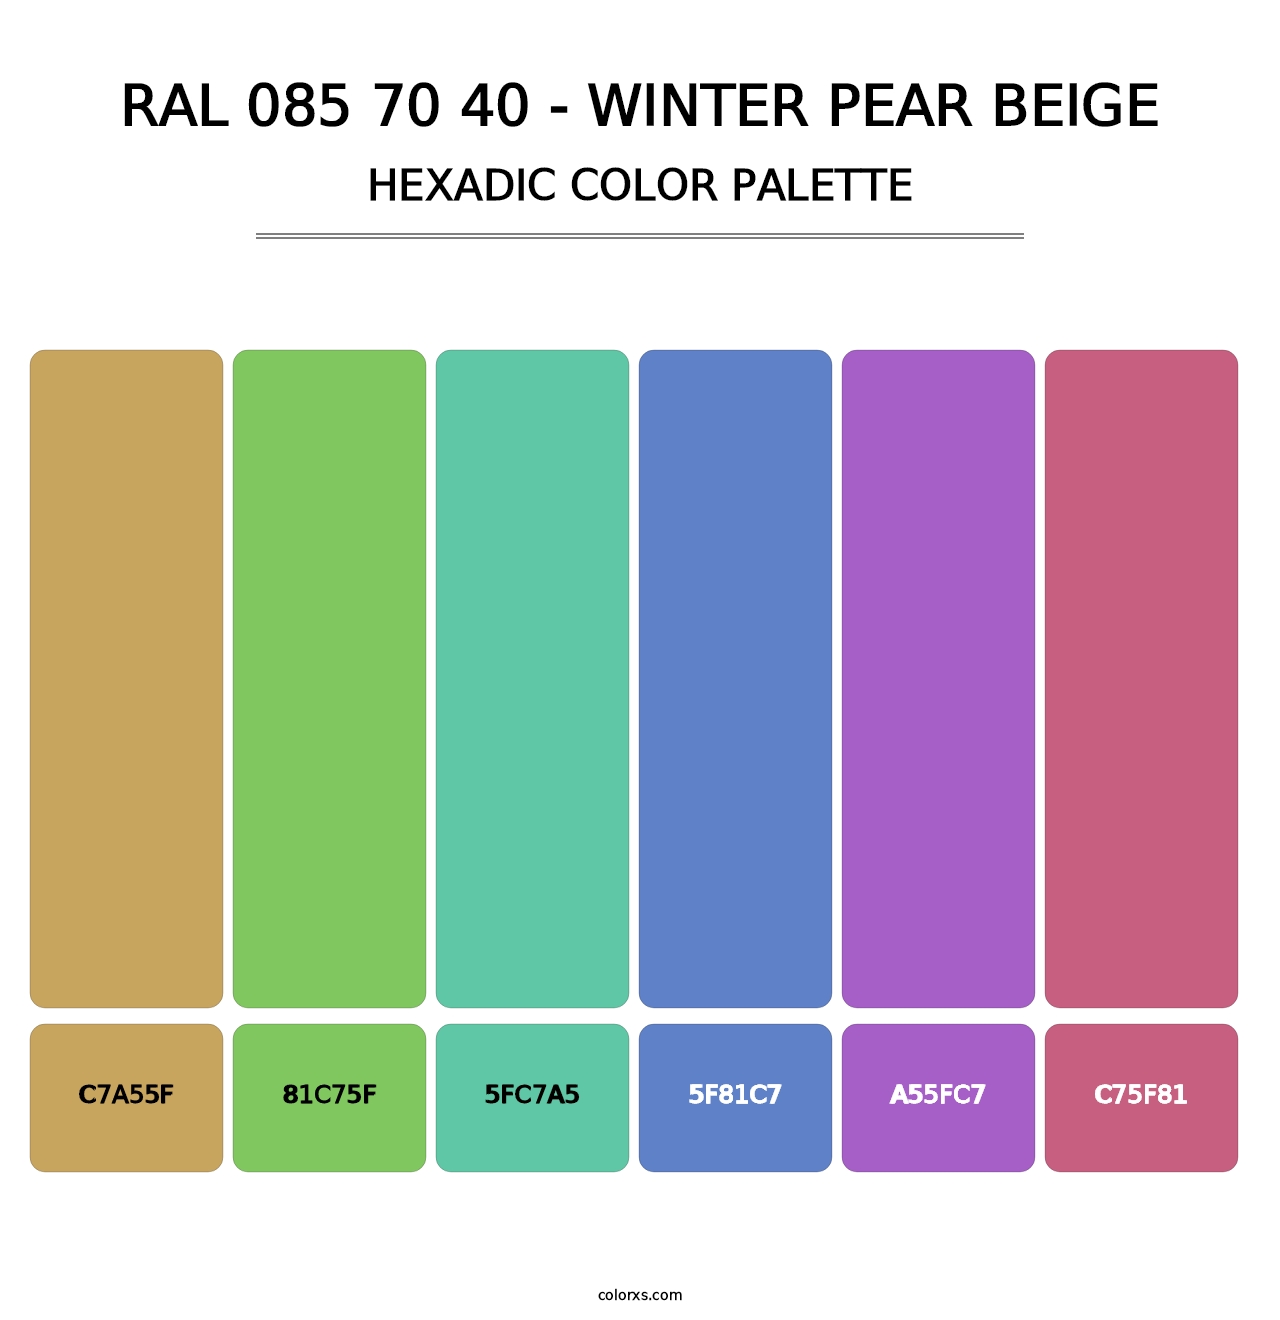 RAL 085 70 40 - Winter Pear Beige - Hexadic Color Palette